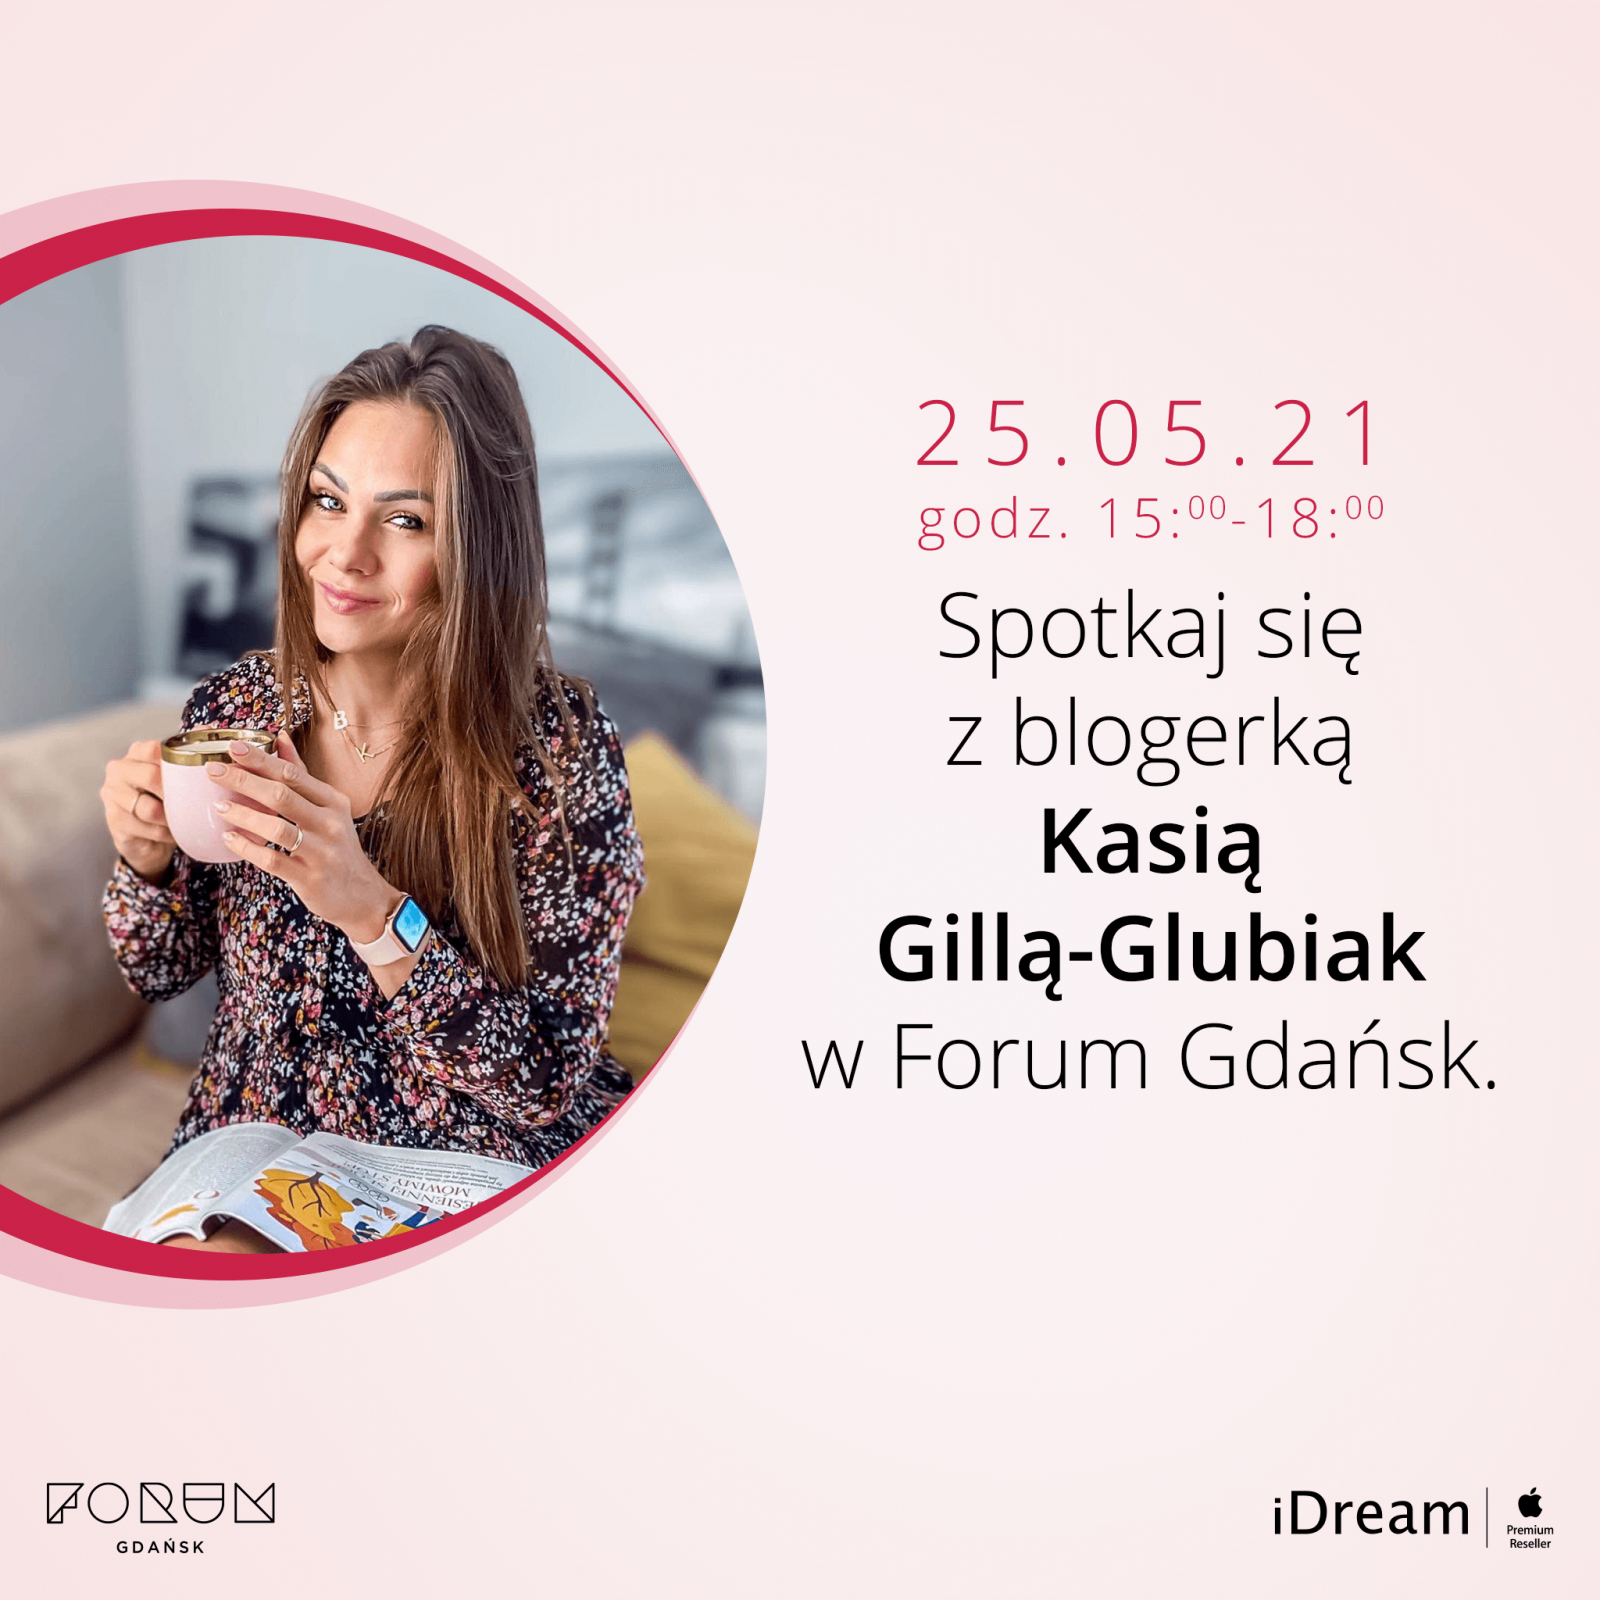 Spotkanie z blogerką Kasią Gillą-Glubiak w salonie iDream!